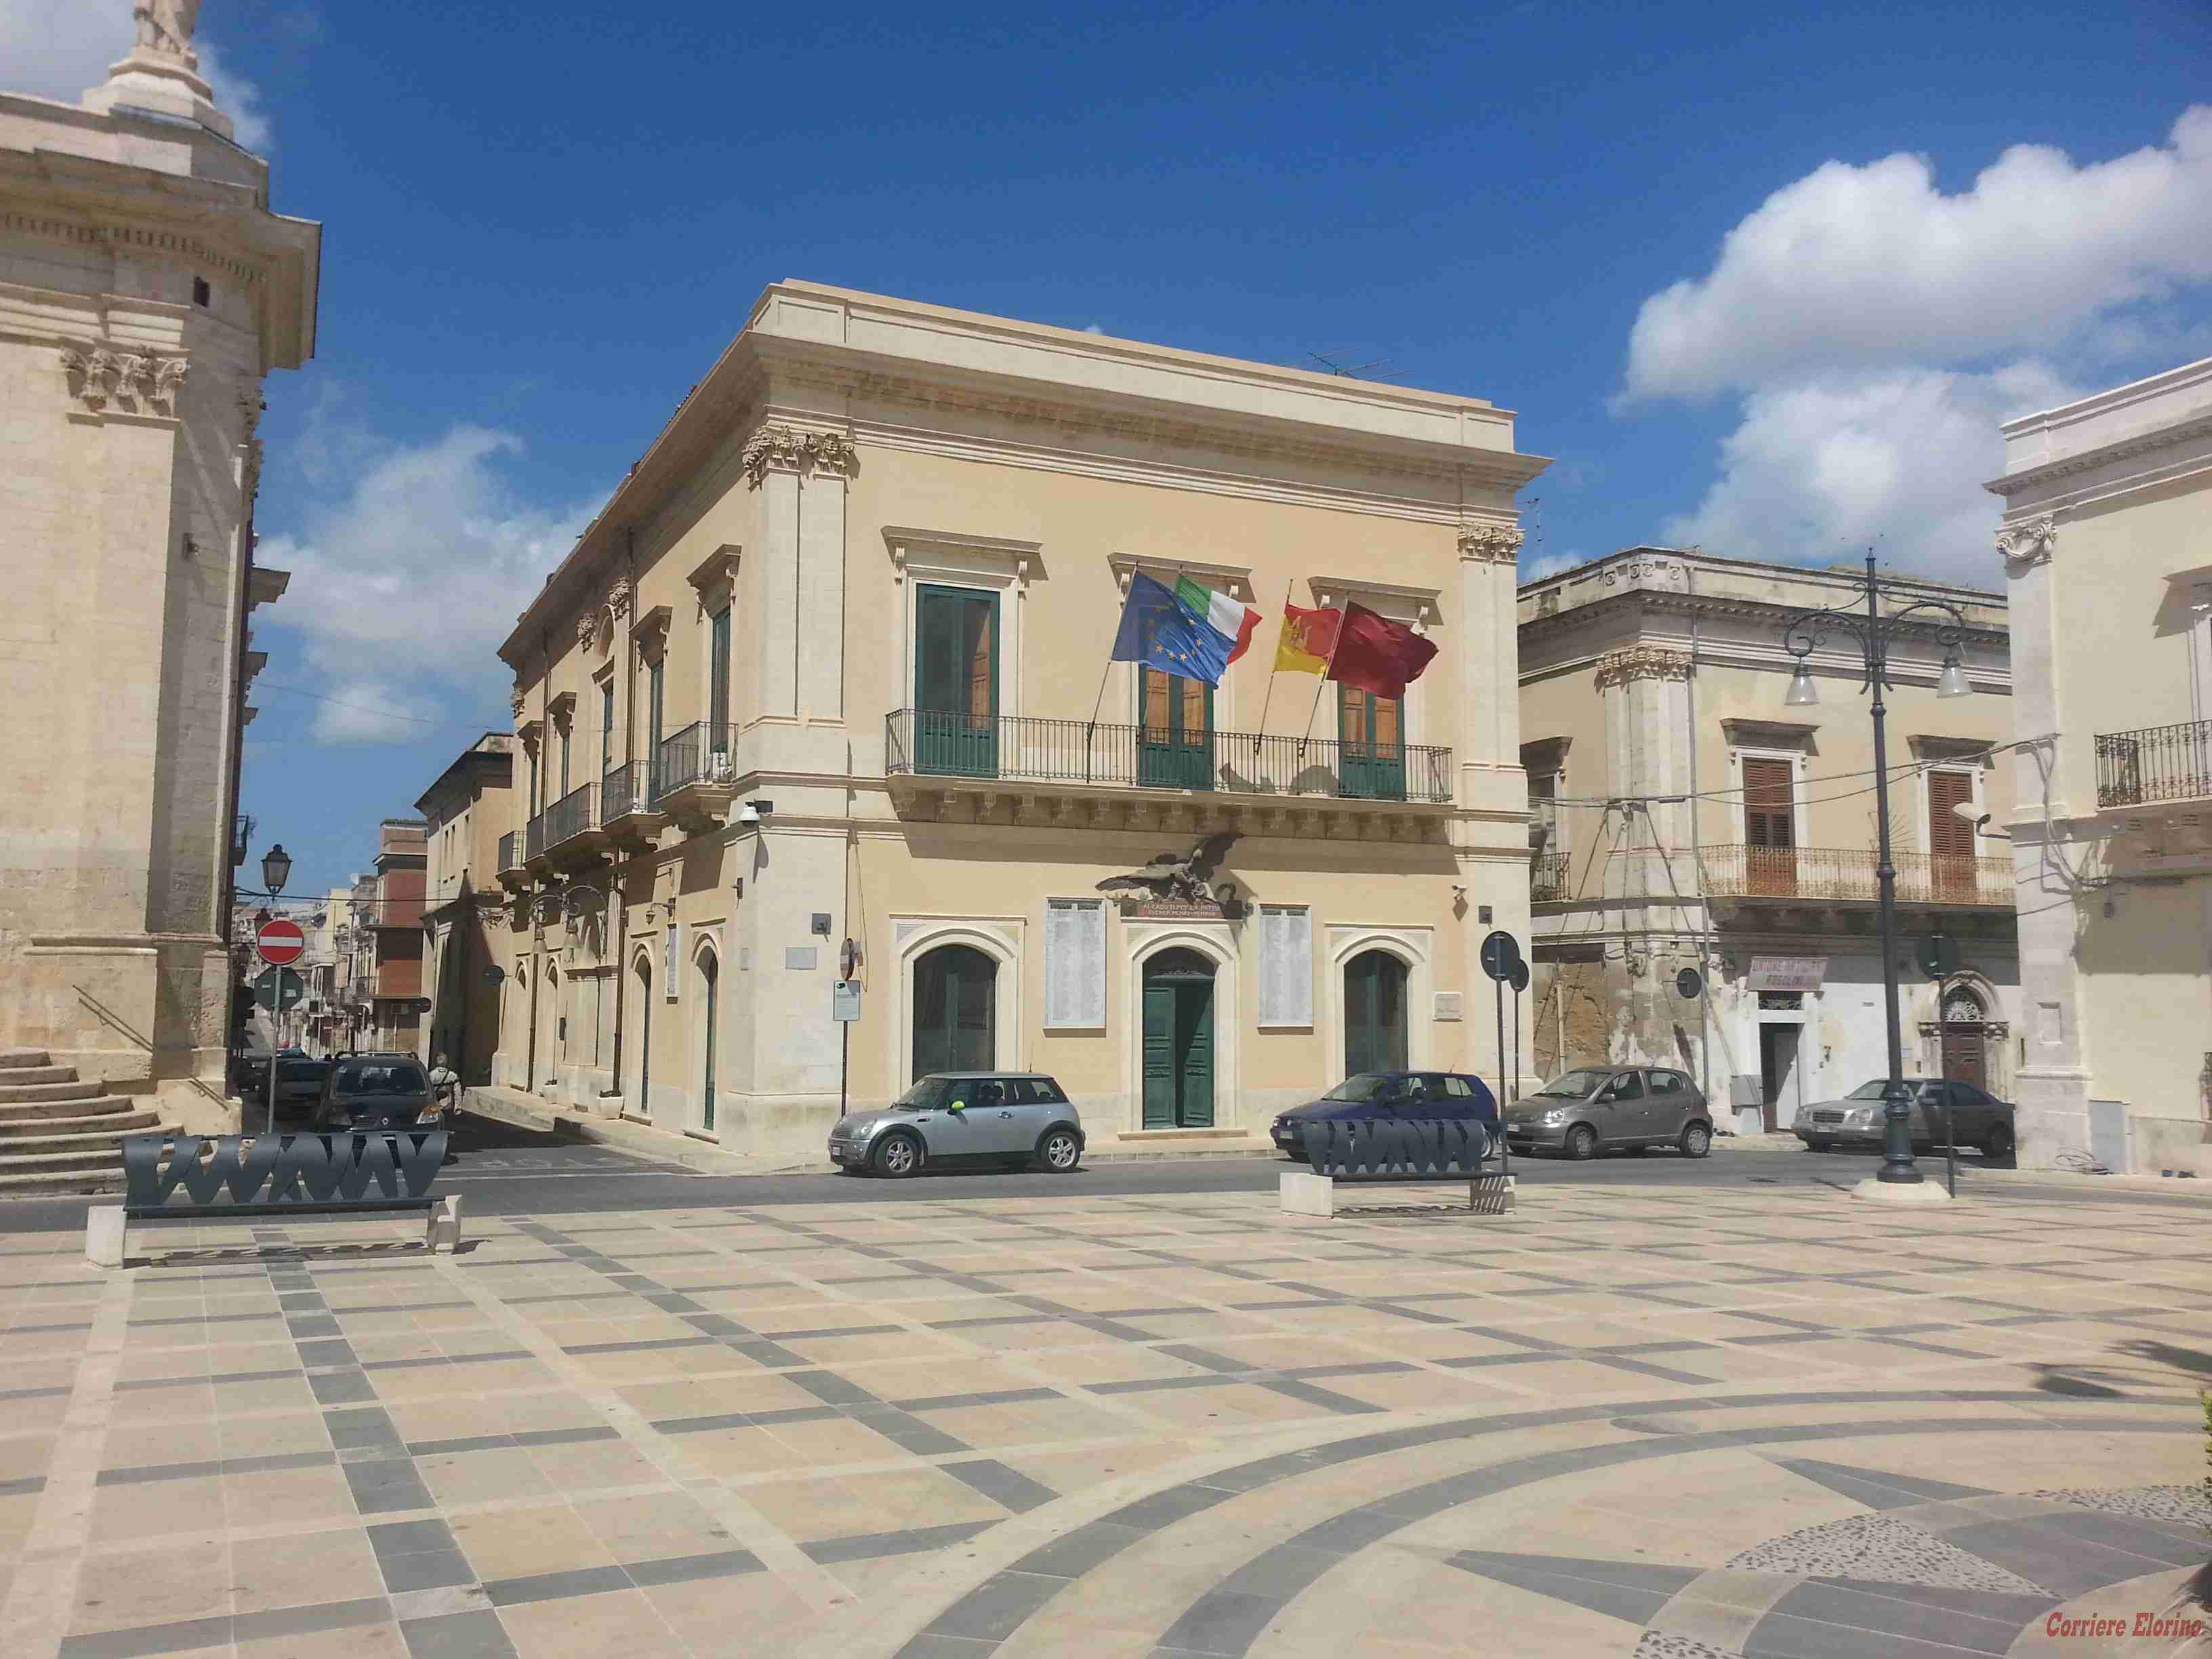 Domani la presentazione delle attività del Distretto Antichi mestieri, sapori e tradizioni popolari Siciliane